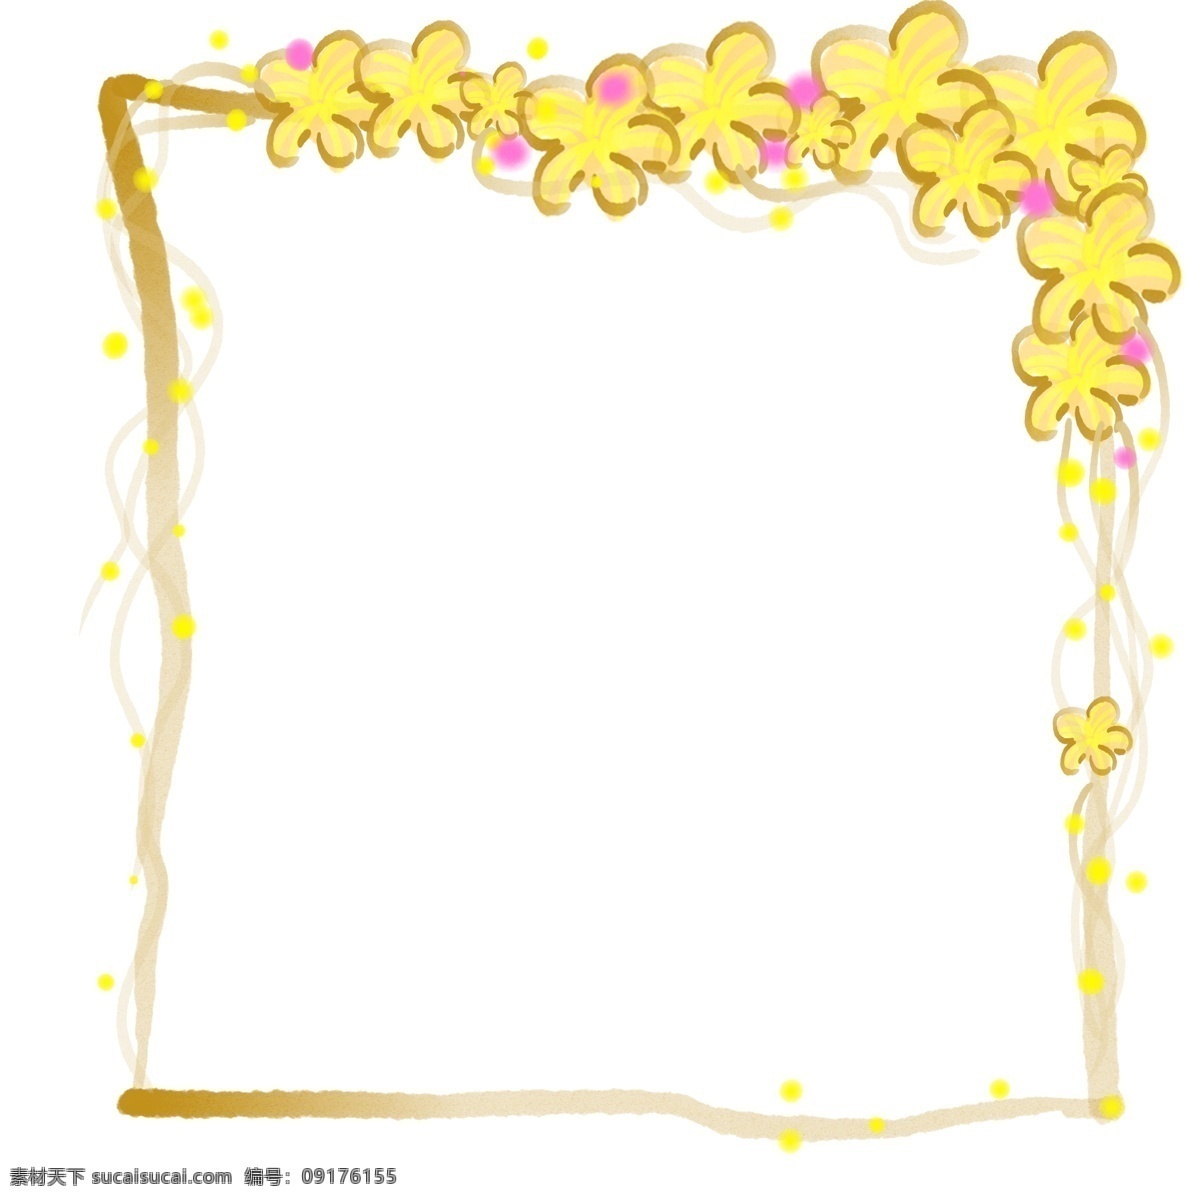 唯美 植物 方形 边框 小框 黄色 花朵